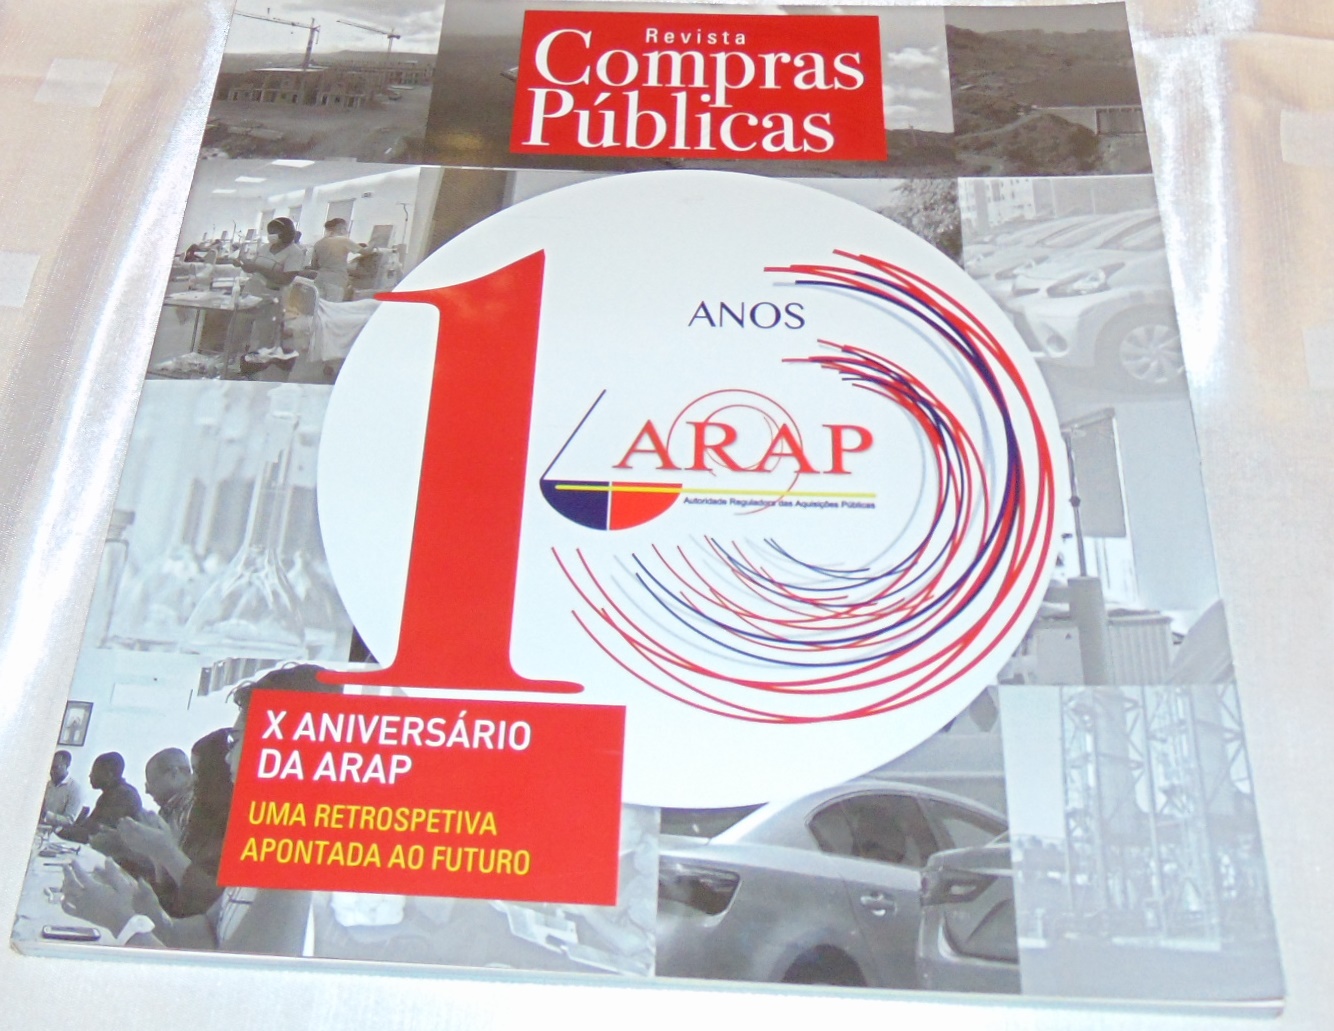 Revista Compras Públicas: X Aniversário da ARAP - Uma Retrospetiva Apontada ao Futuro